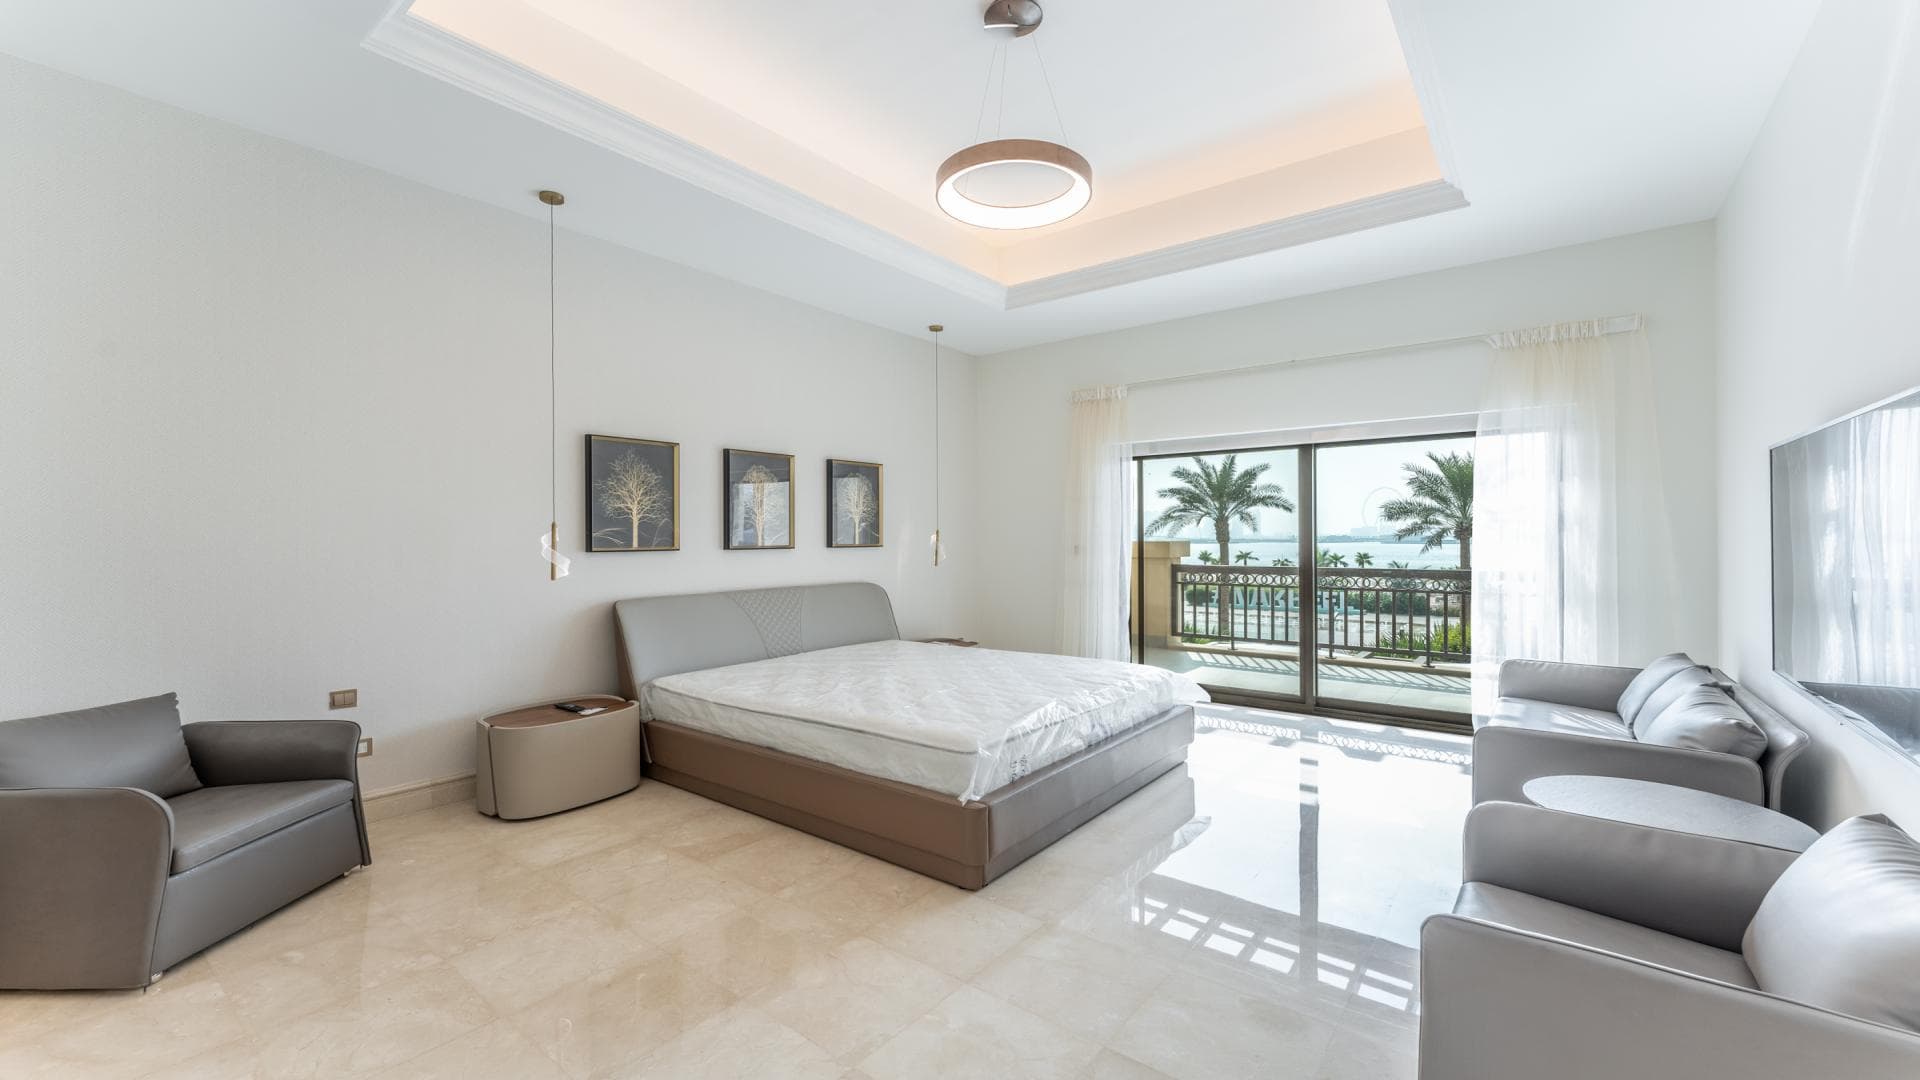 4 Bedroom Apartment For Rent Al Ramth 33 Lp20801 2a8733f936de7000.jpg